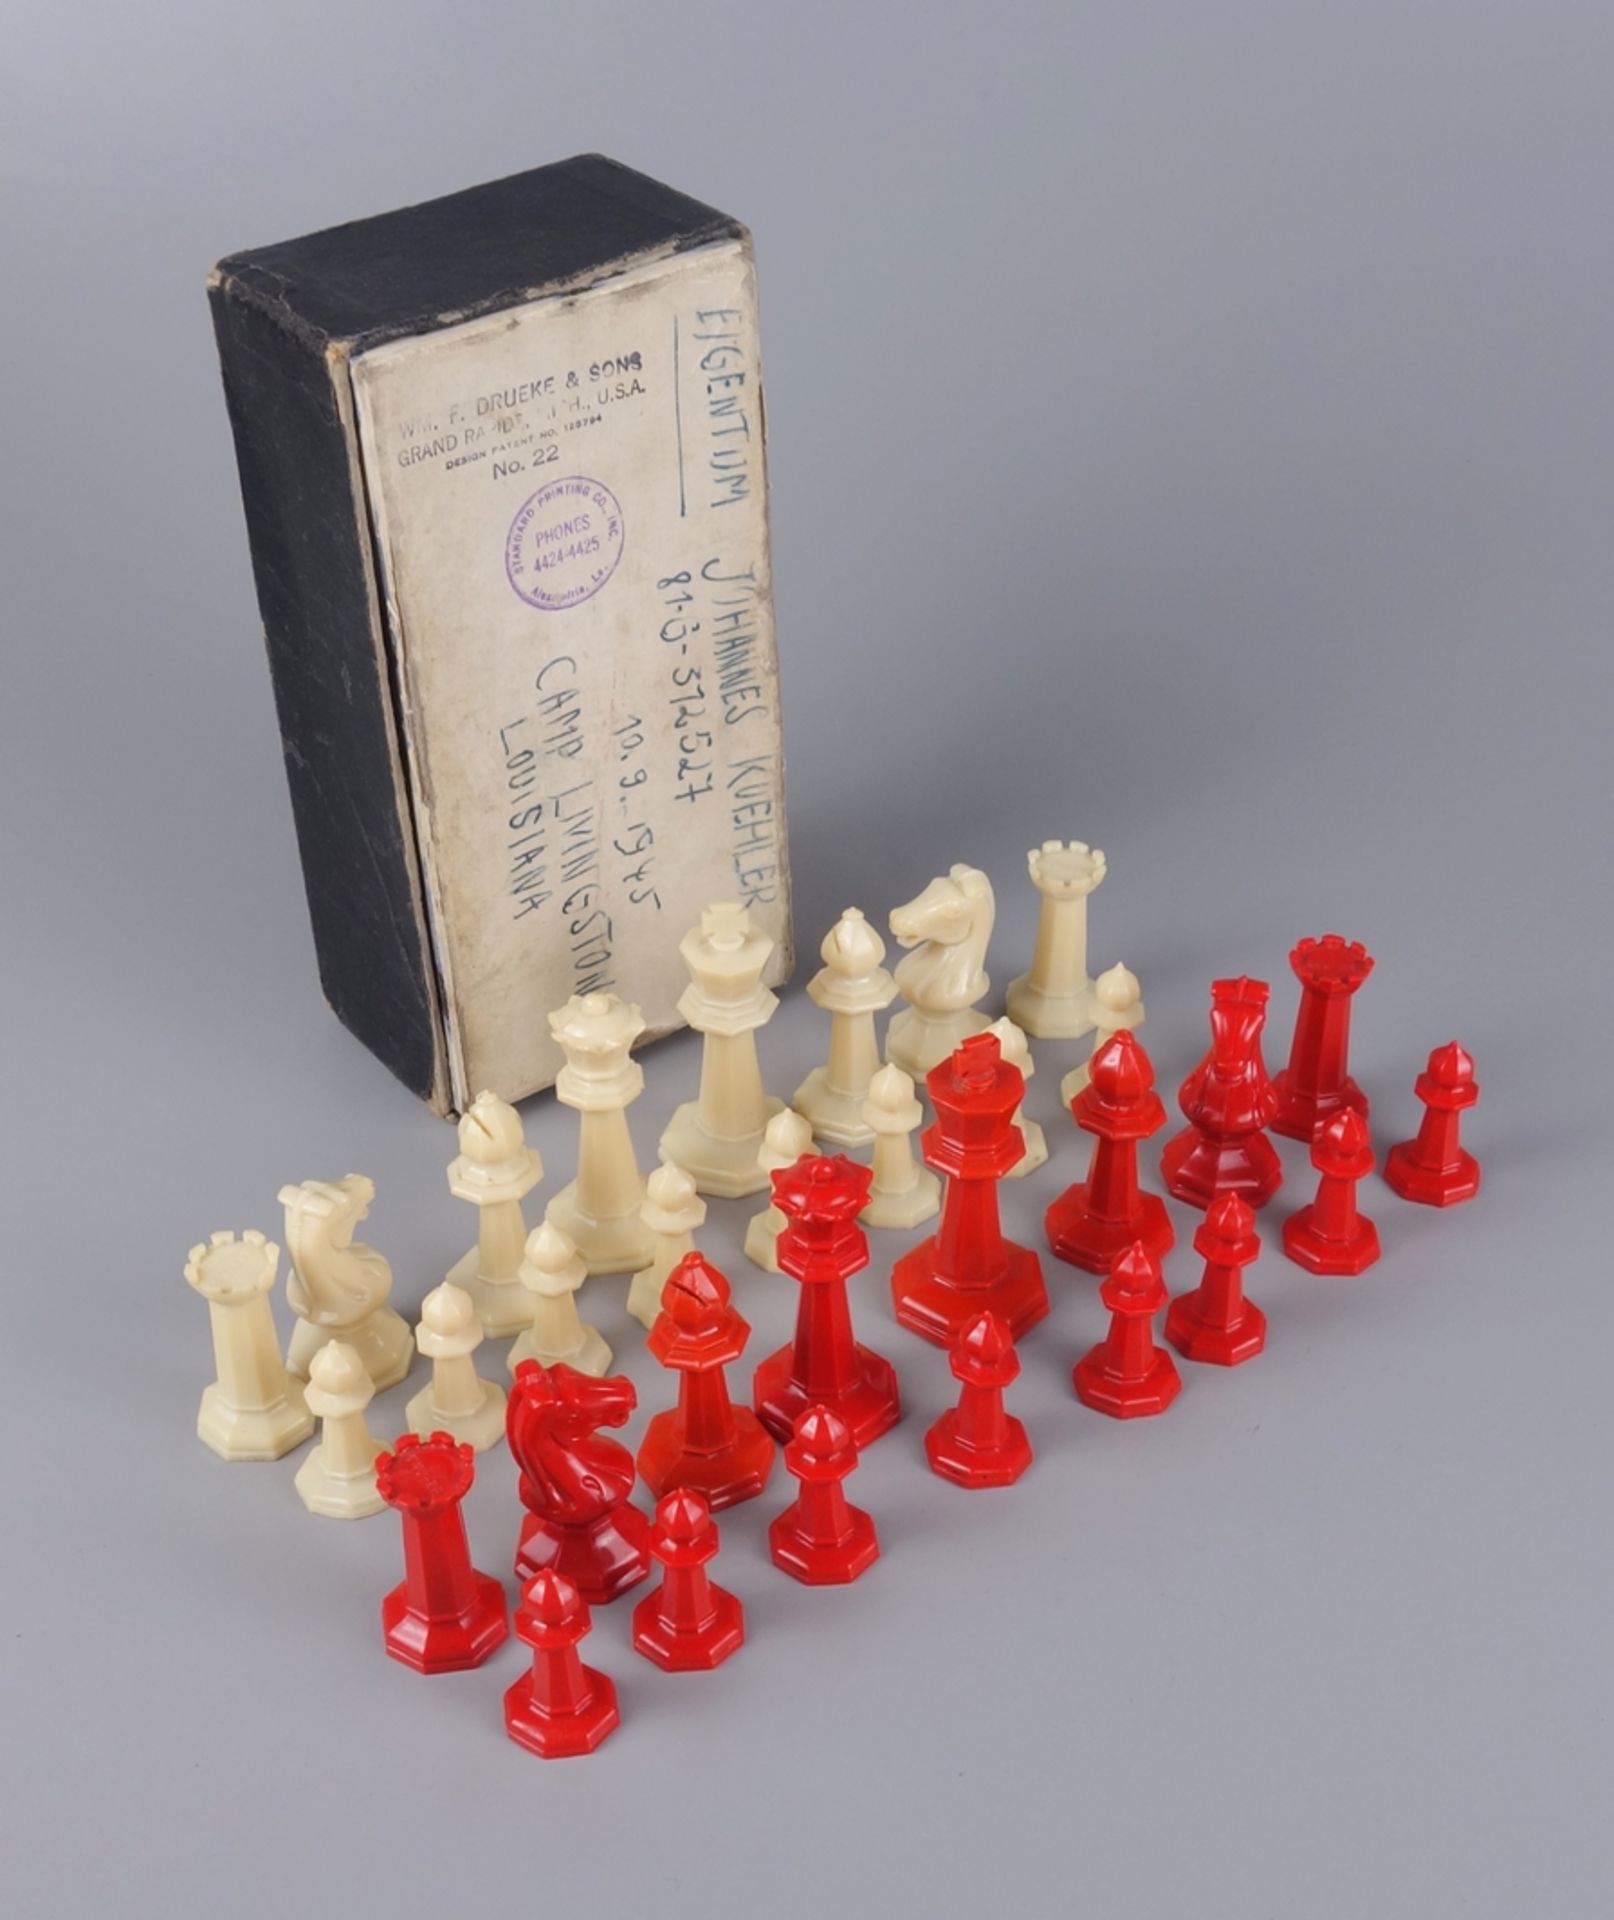 32 Schachfiguren, Drueke&Sons, Grand Rapids, USA, in Originalkarton, 1940er Jah